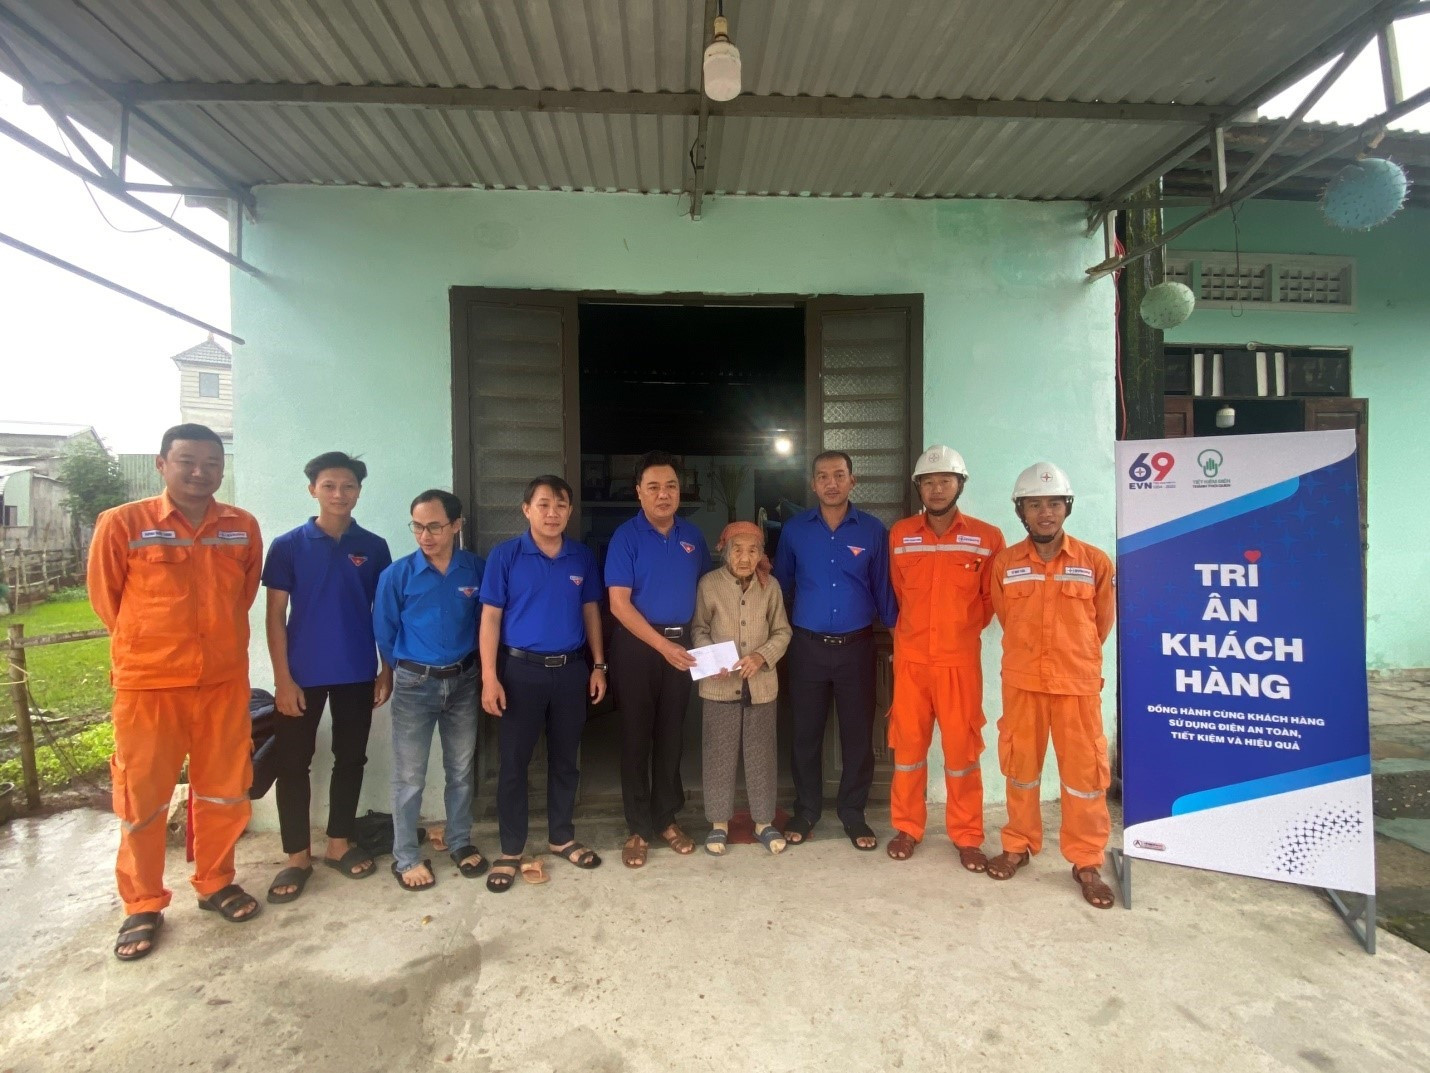 Tặng quà và hỗ trợ sửa chữa điện cho Mẹ VNAH Nguyễn Thị Cầm (Đại Nghĩa).